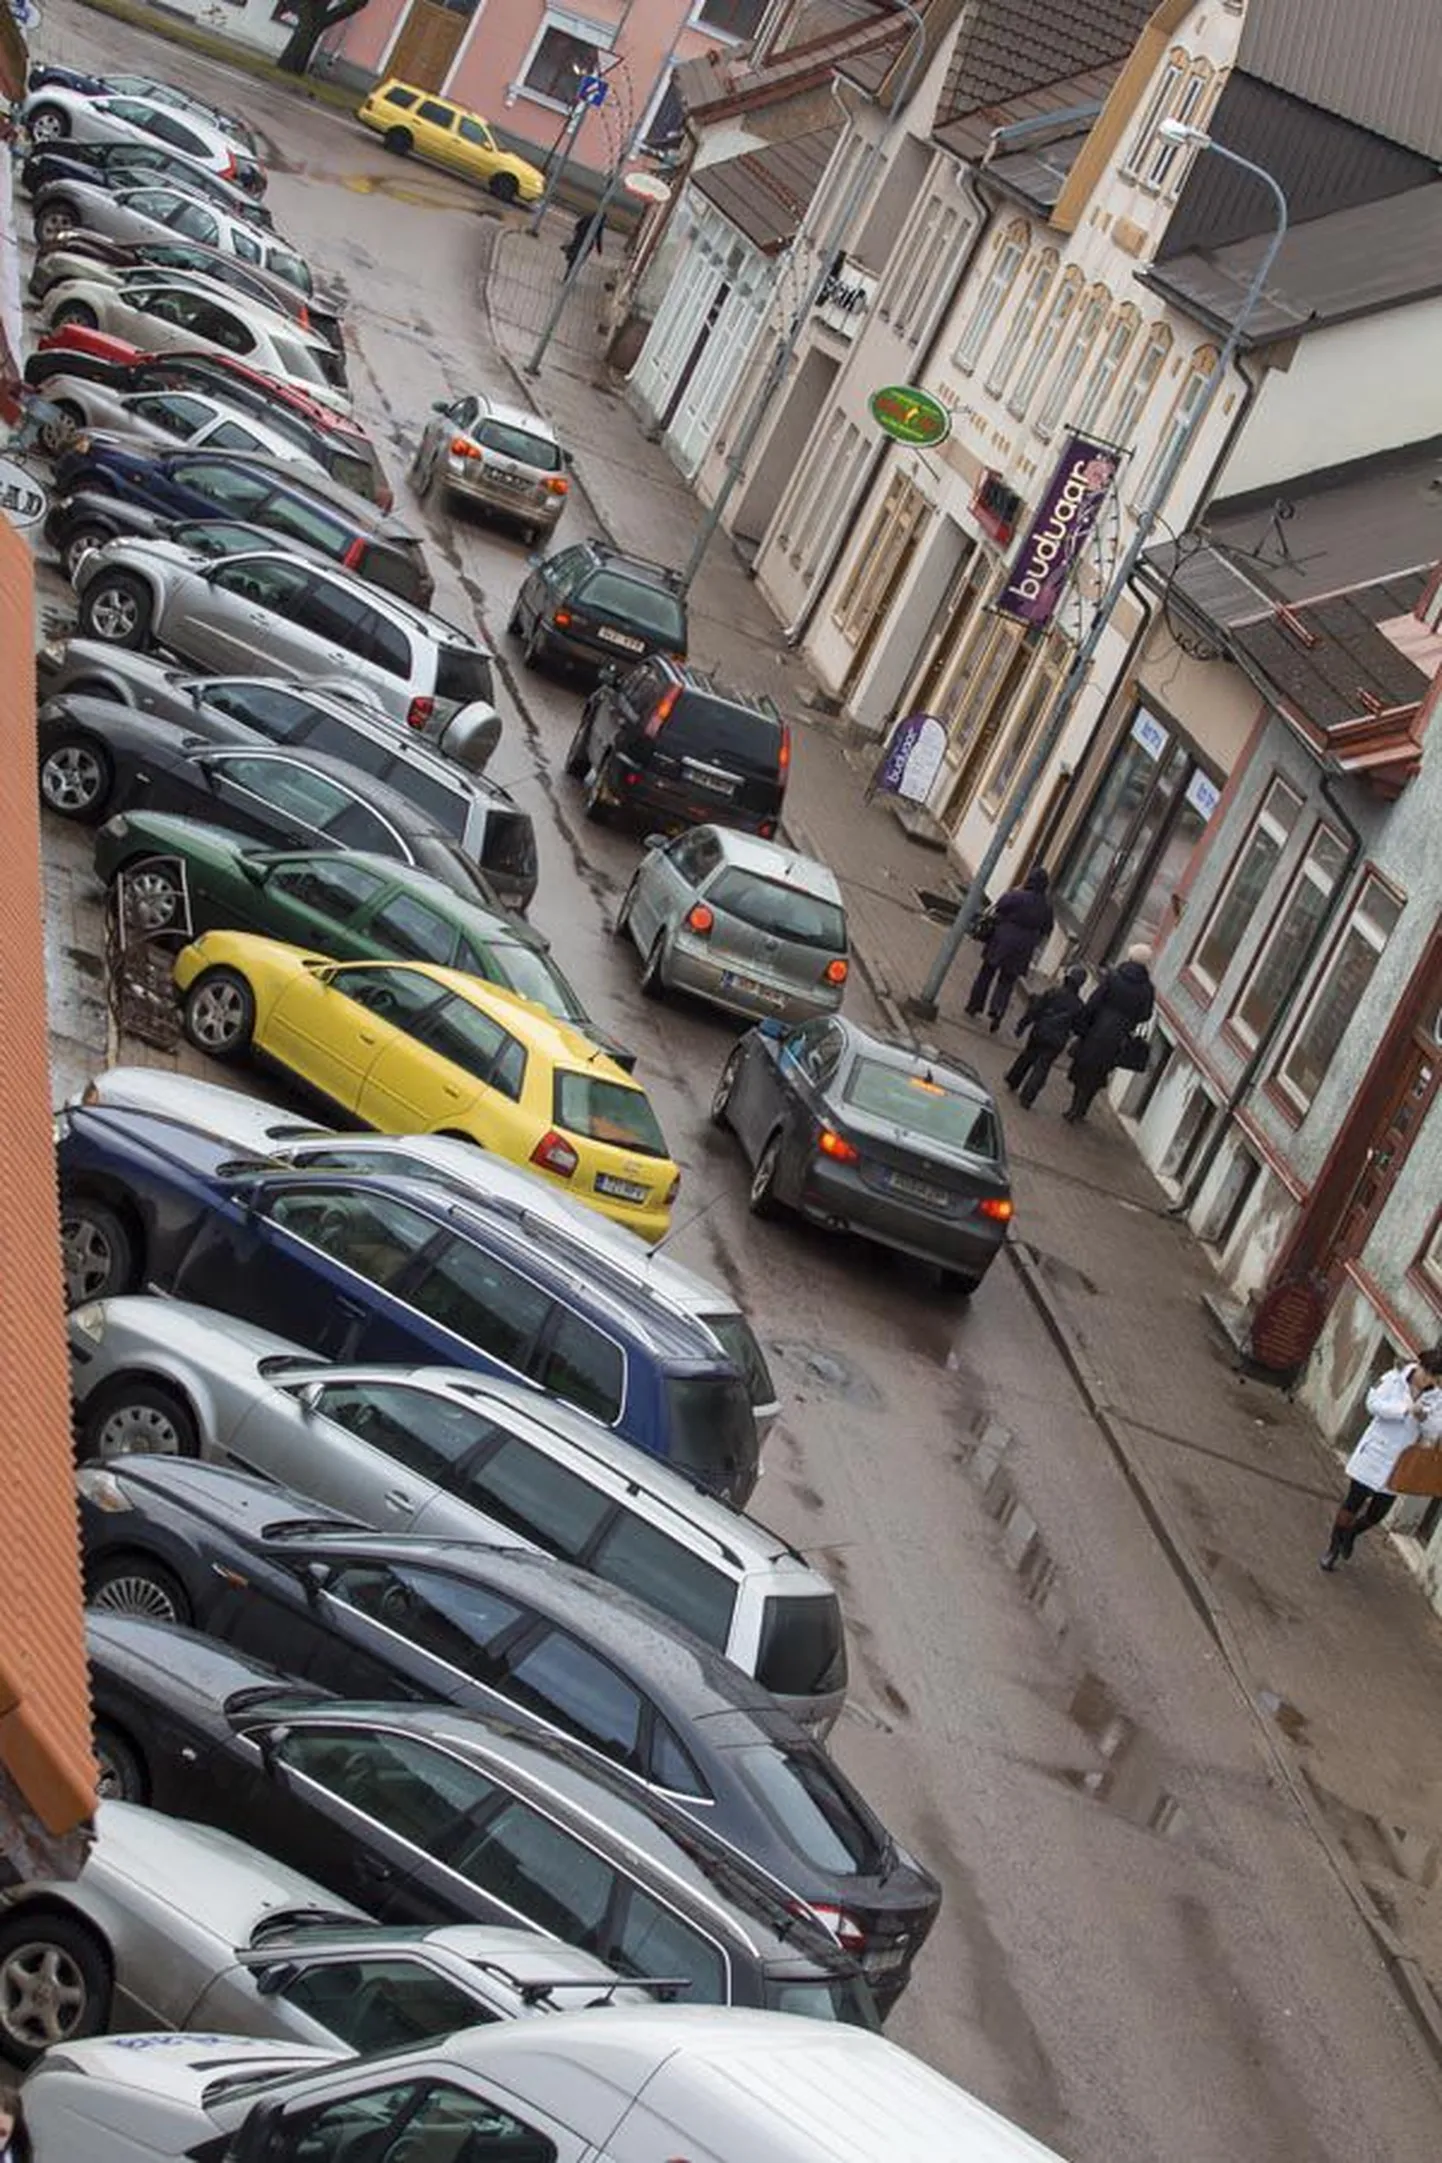 Tasuta parkimine on kesklinnas loonud olukorra, kus autojuhtidel on aeg-ajalt väga keeruline parkimiskohta leida.